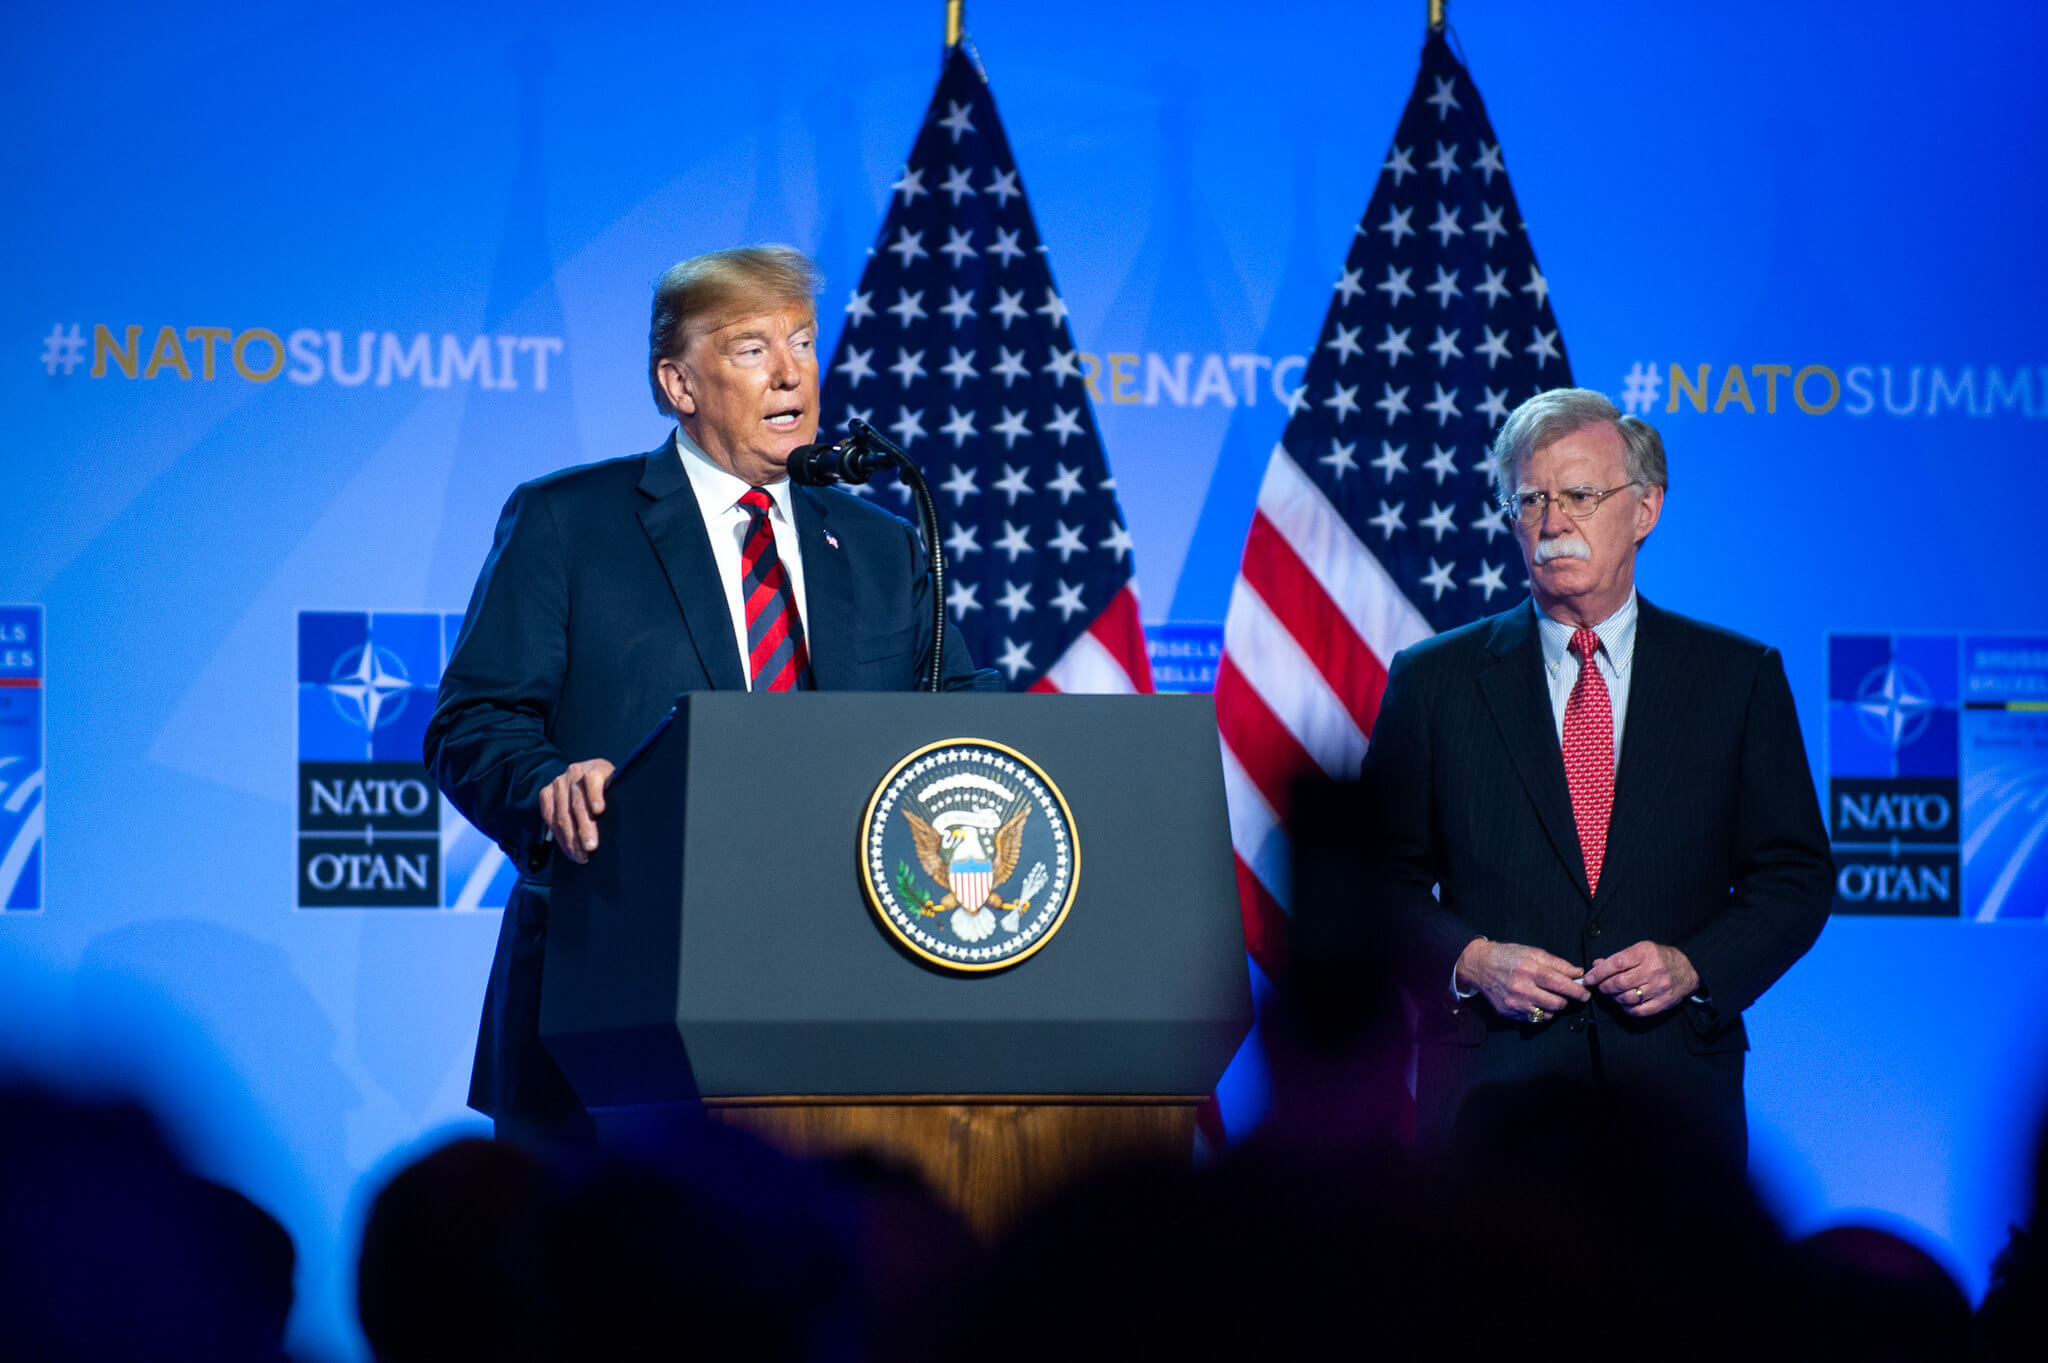 President Donald Trump samen met toenmalig National Security Advisor John Bolton tijdens een NAVO-top in 2018. © NATO